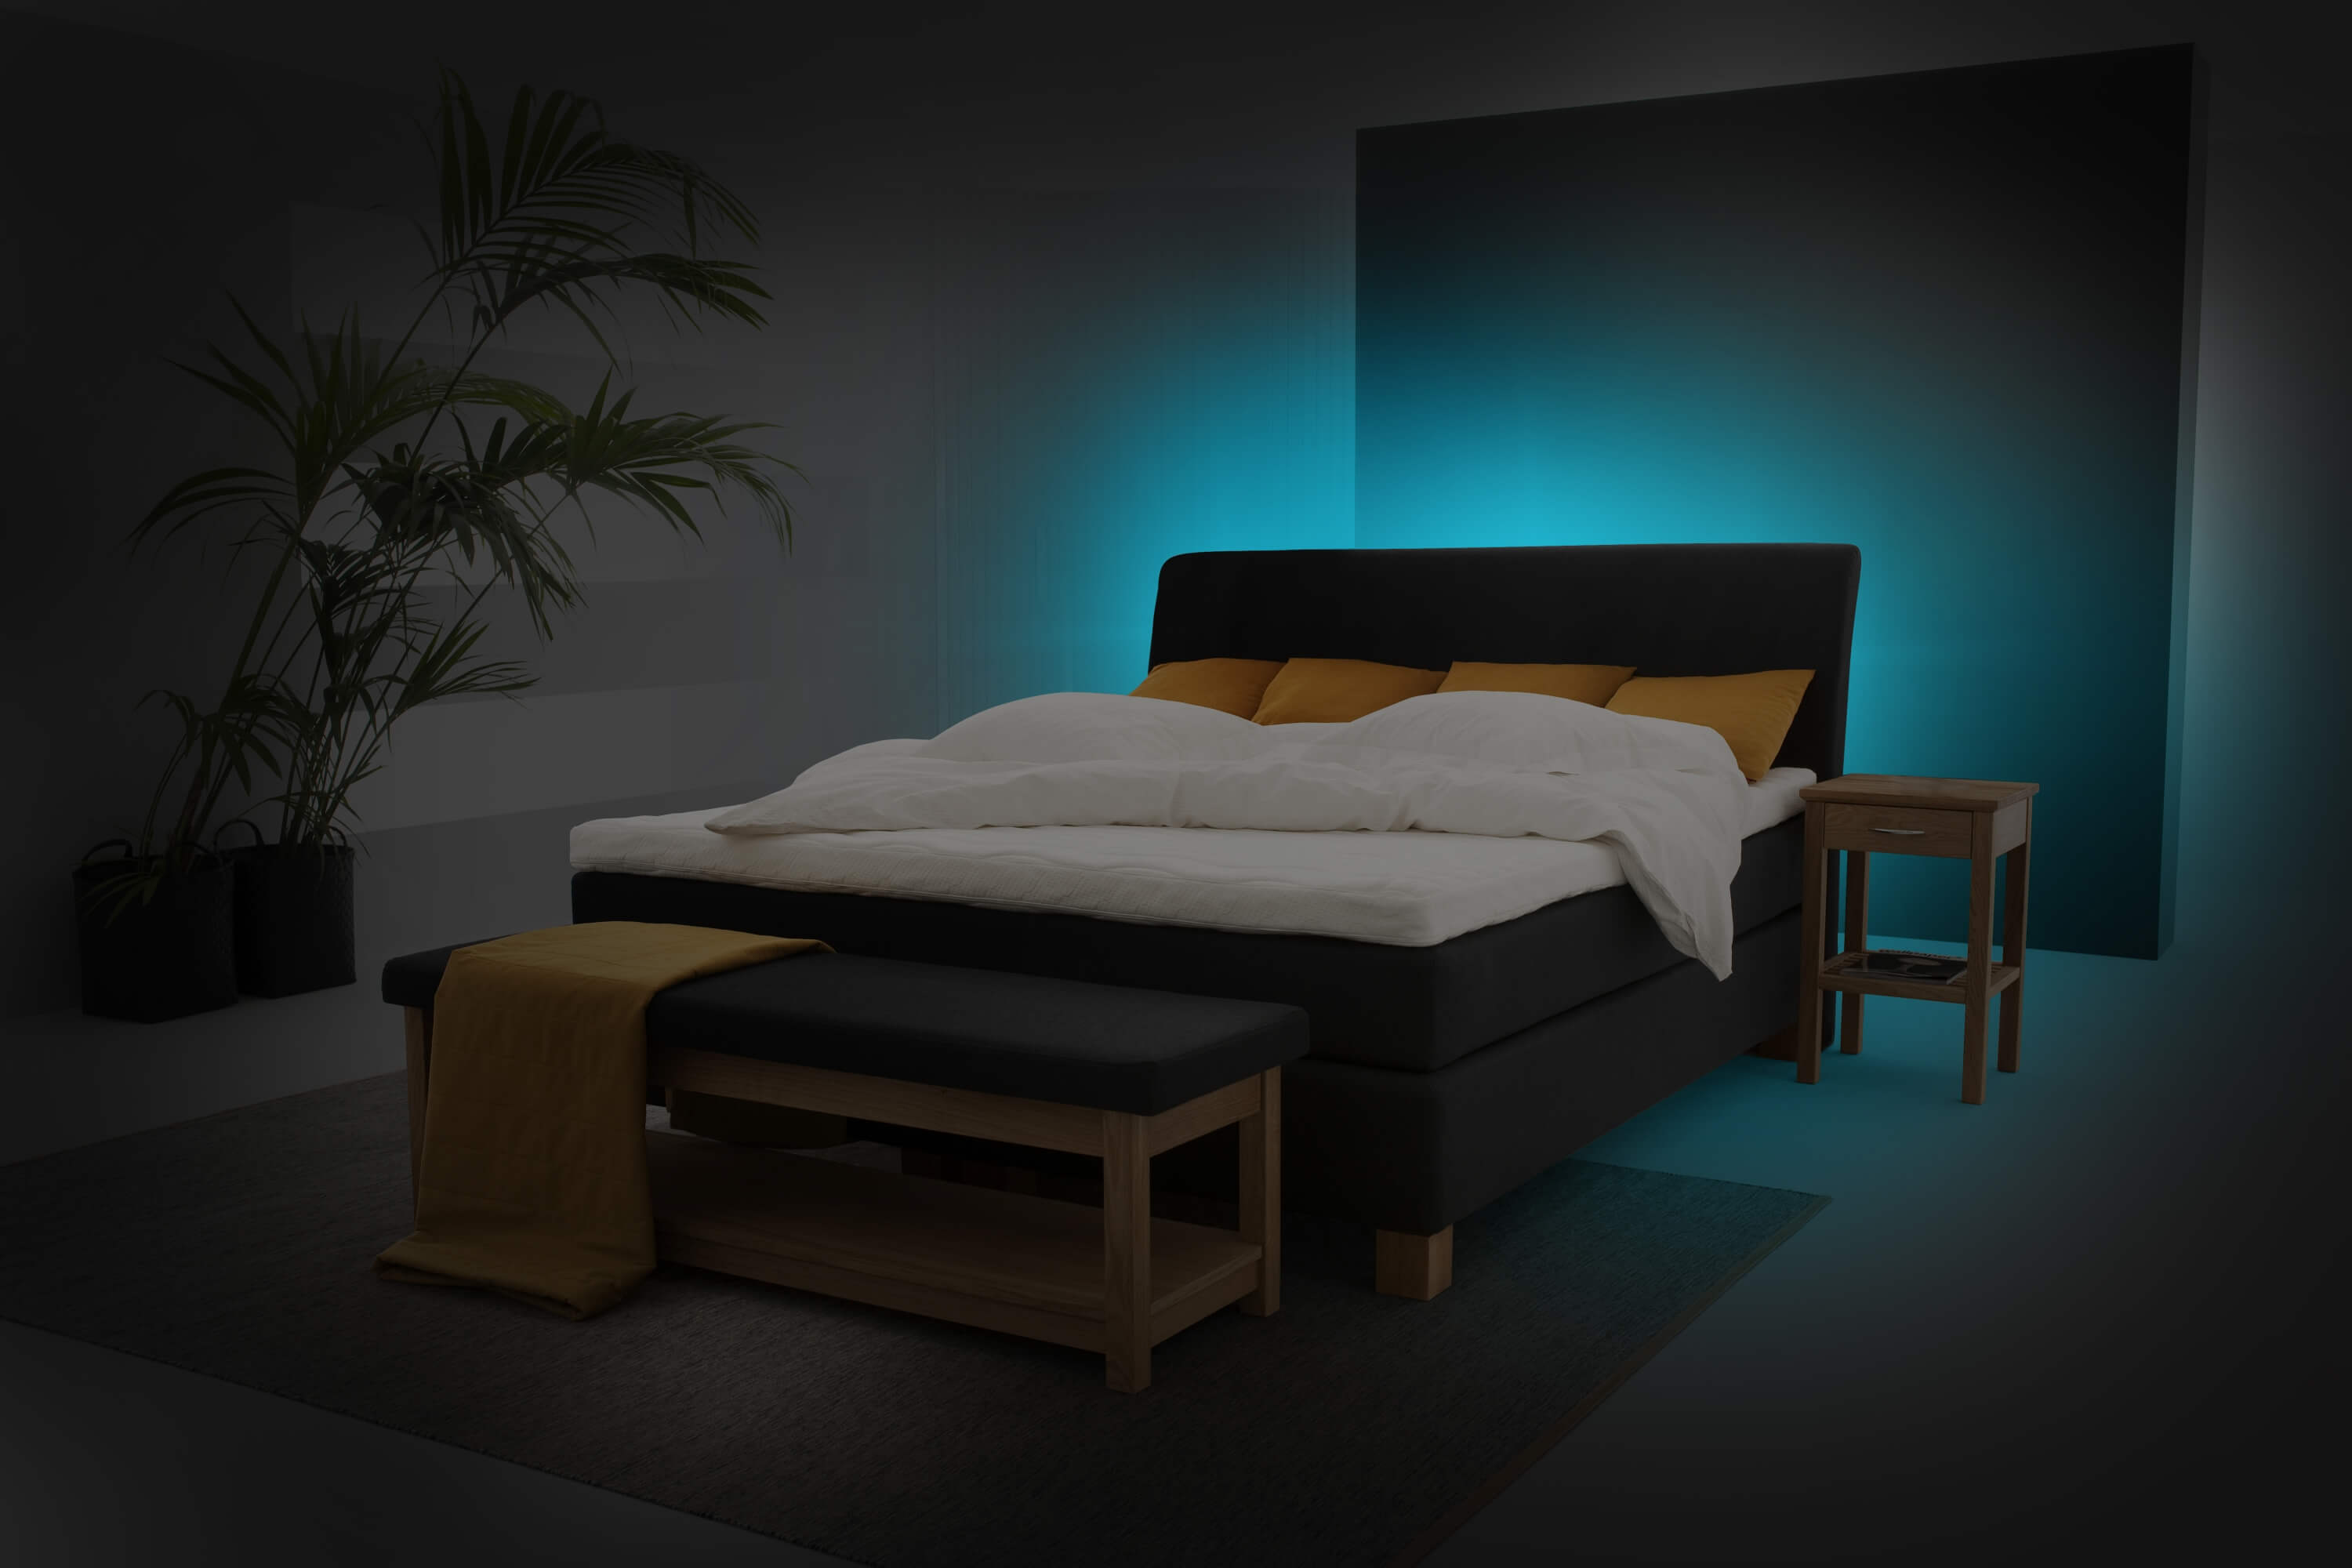 Color Ambiance Bringt Durch Licht Atmosphare In Das Schlafzimmer